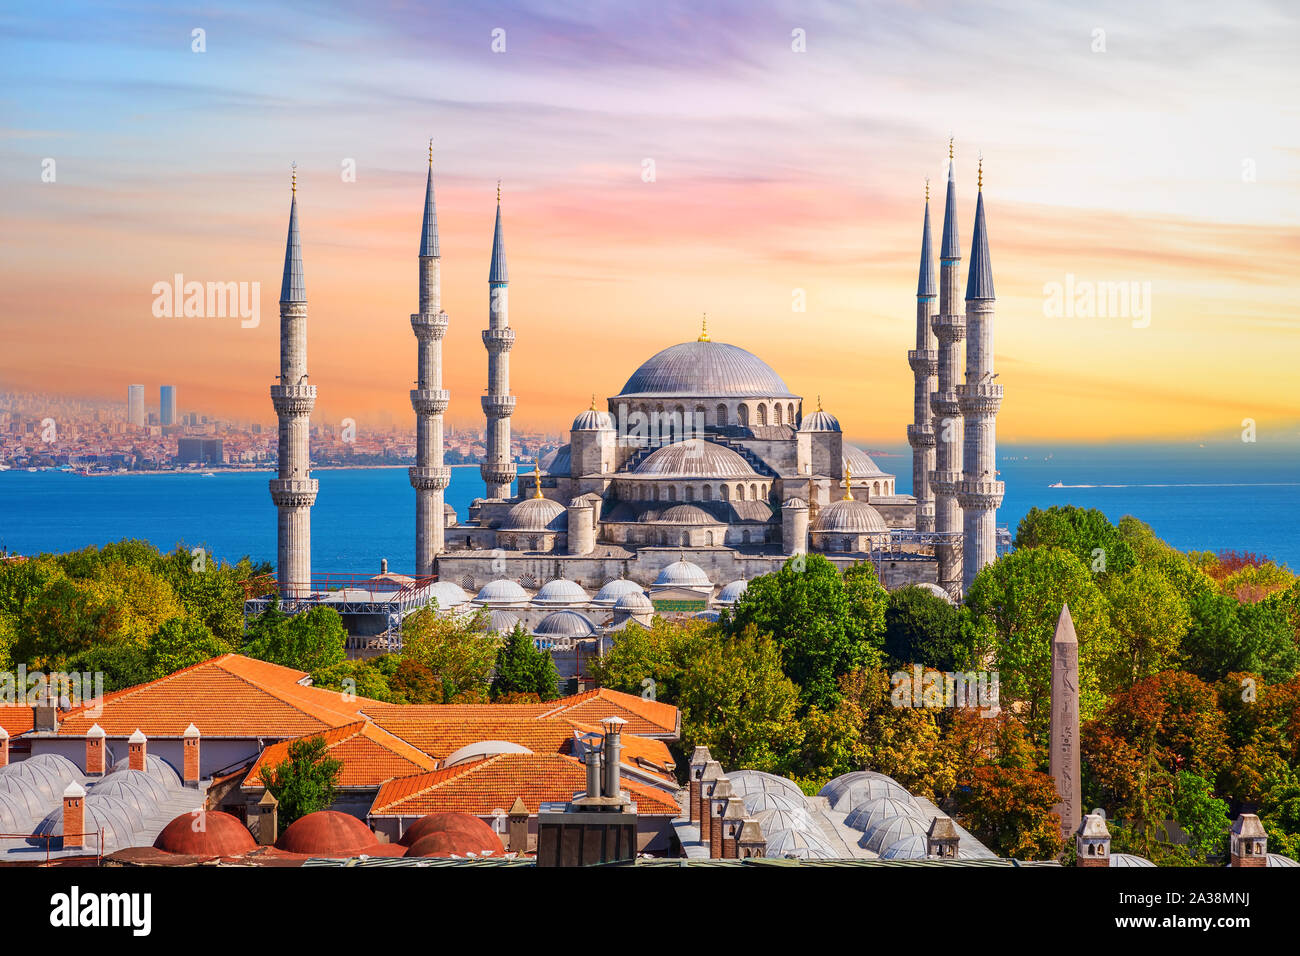 Sultan Ahmed Moschee oder die Blaue Moschee in Istanbul, einer der berühmtesten Türkischen Sehenswürdigkeiten Stockfoto